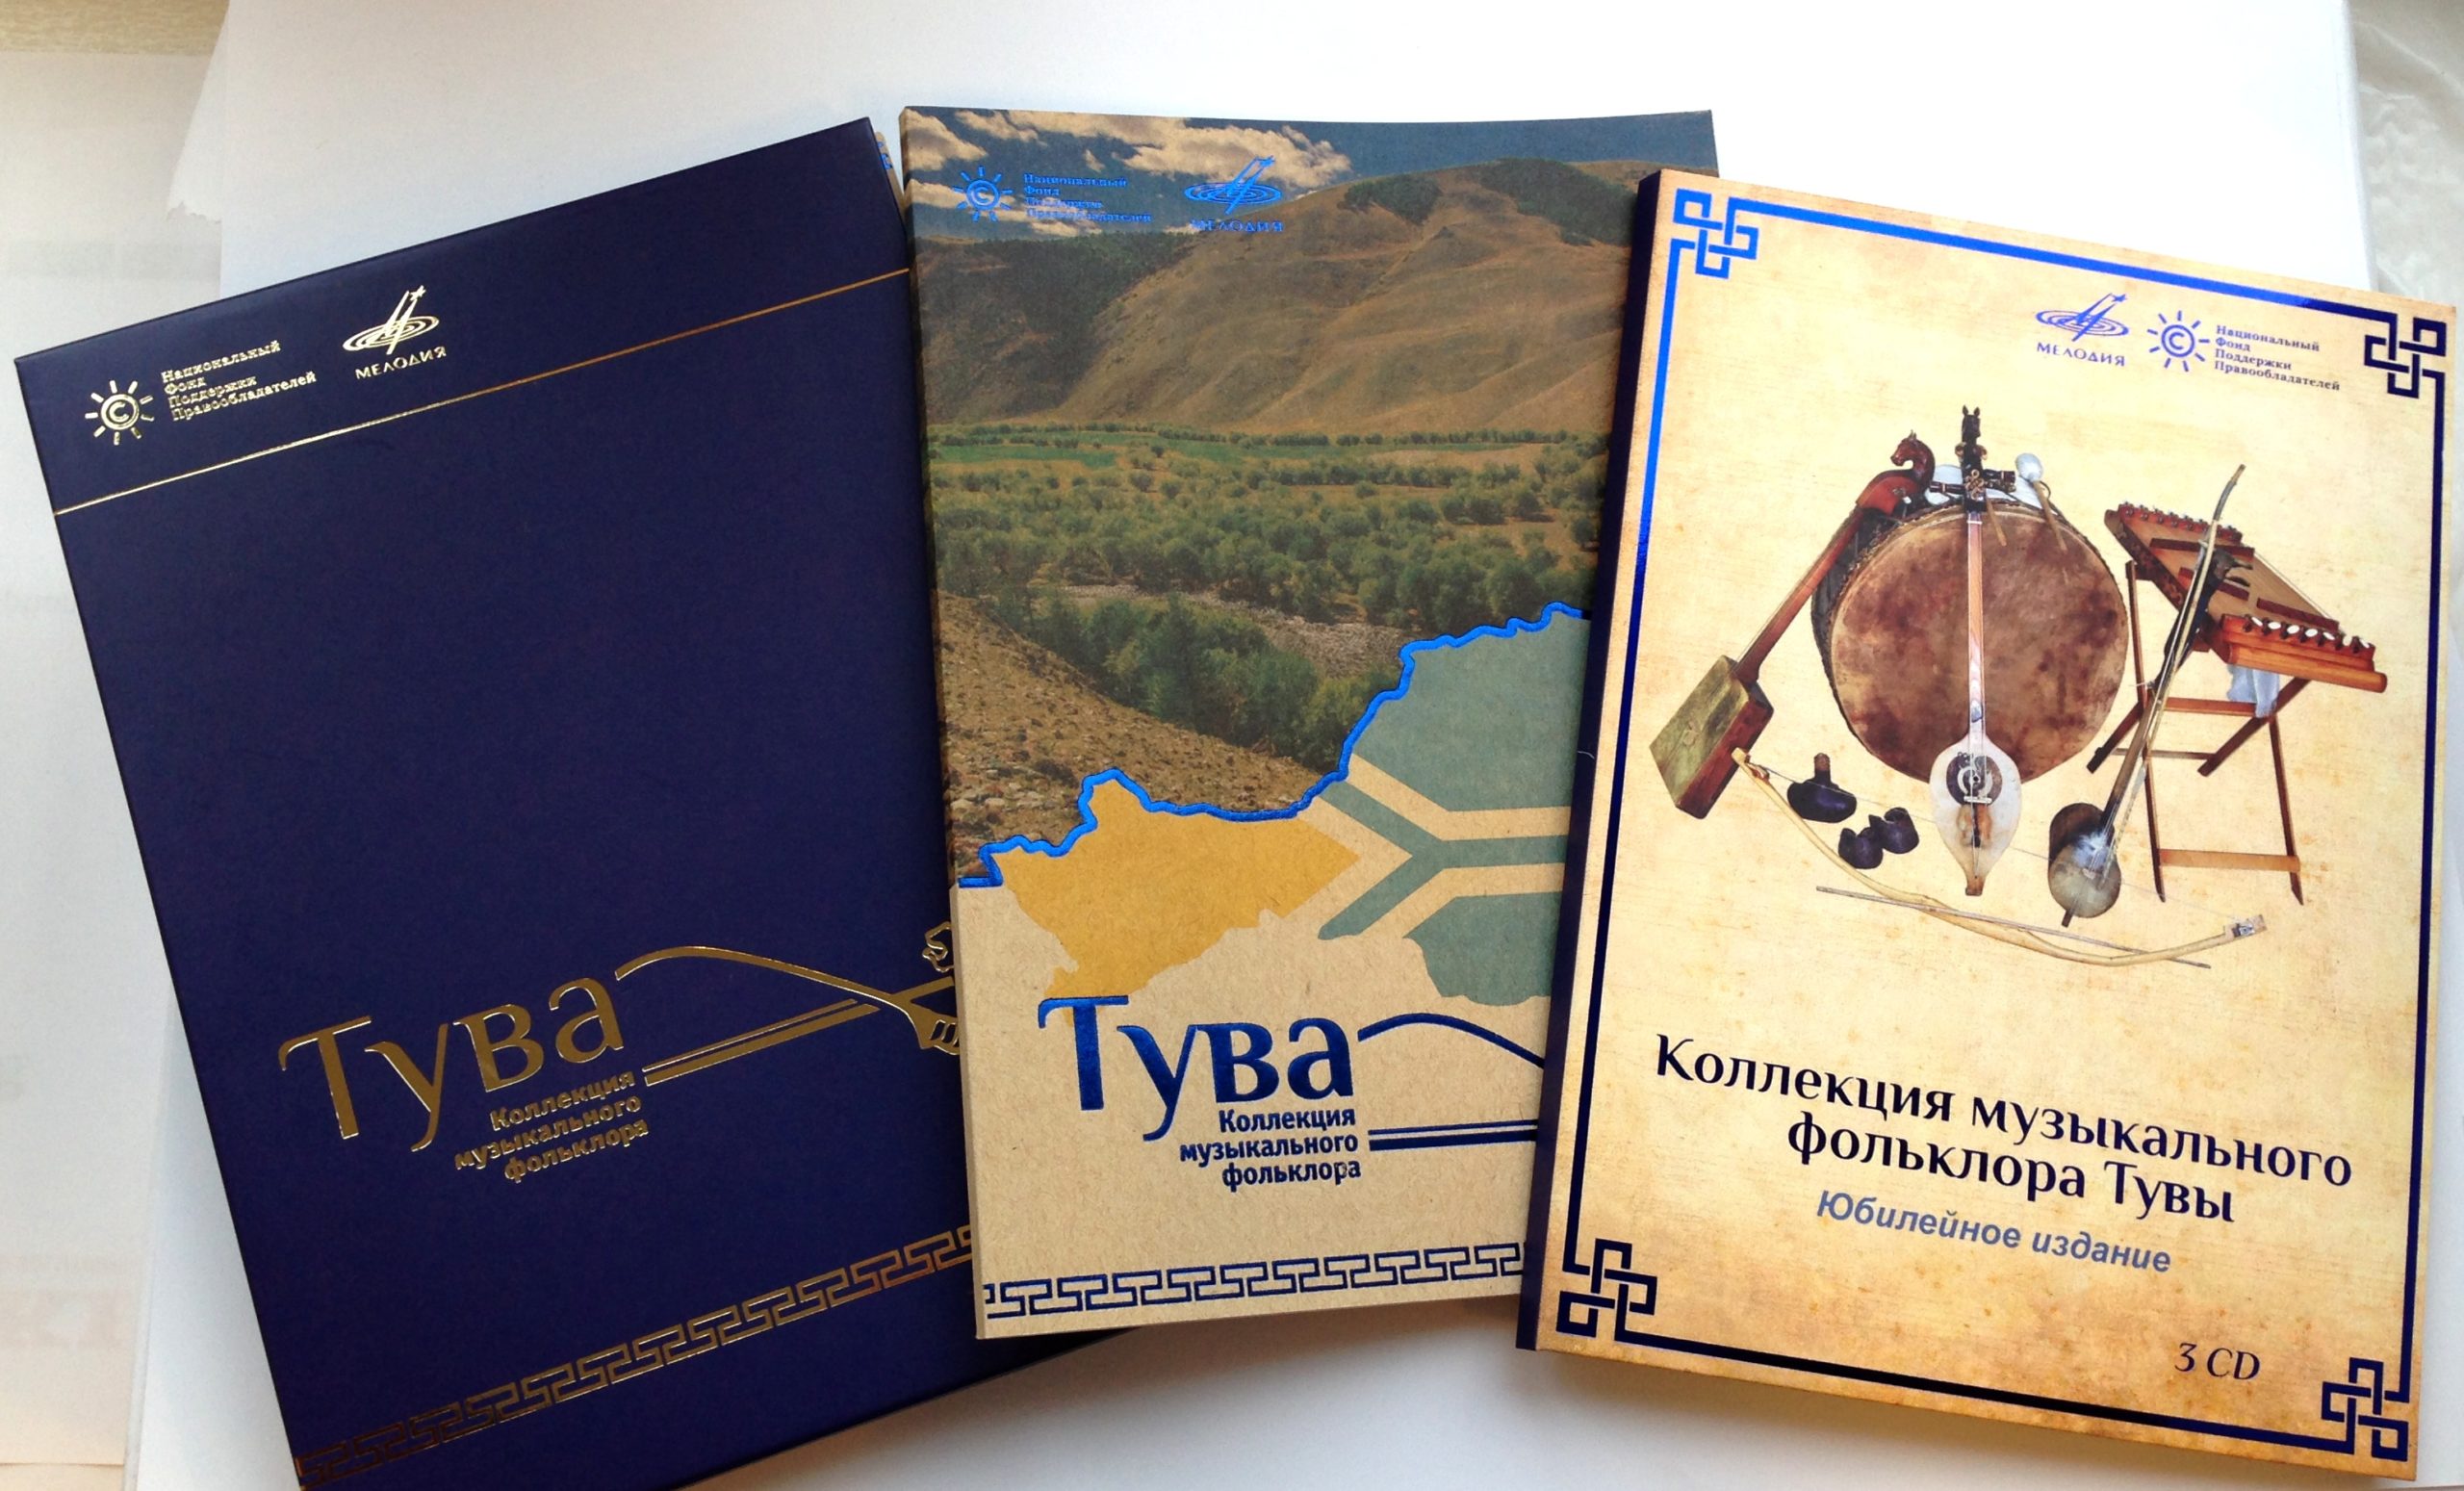 К 100-летию единения России и Тувы НФПП издал коллекцию тувинского музыкального фольклора